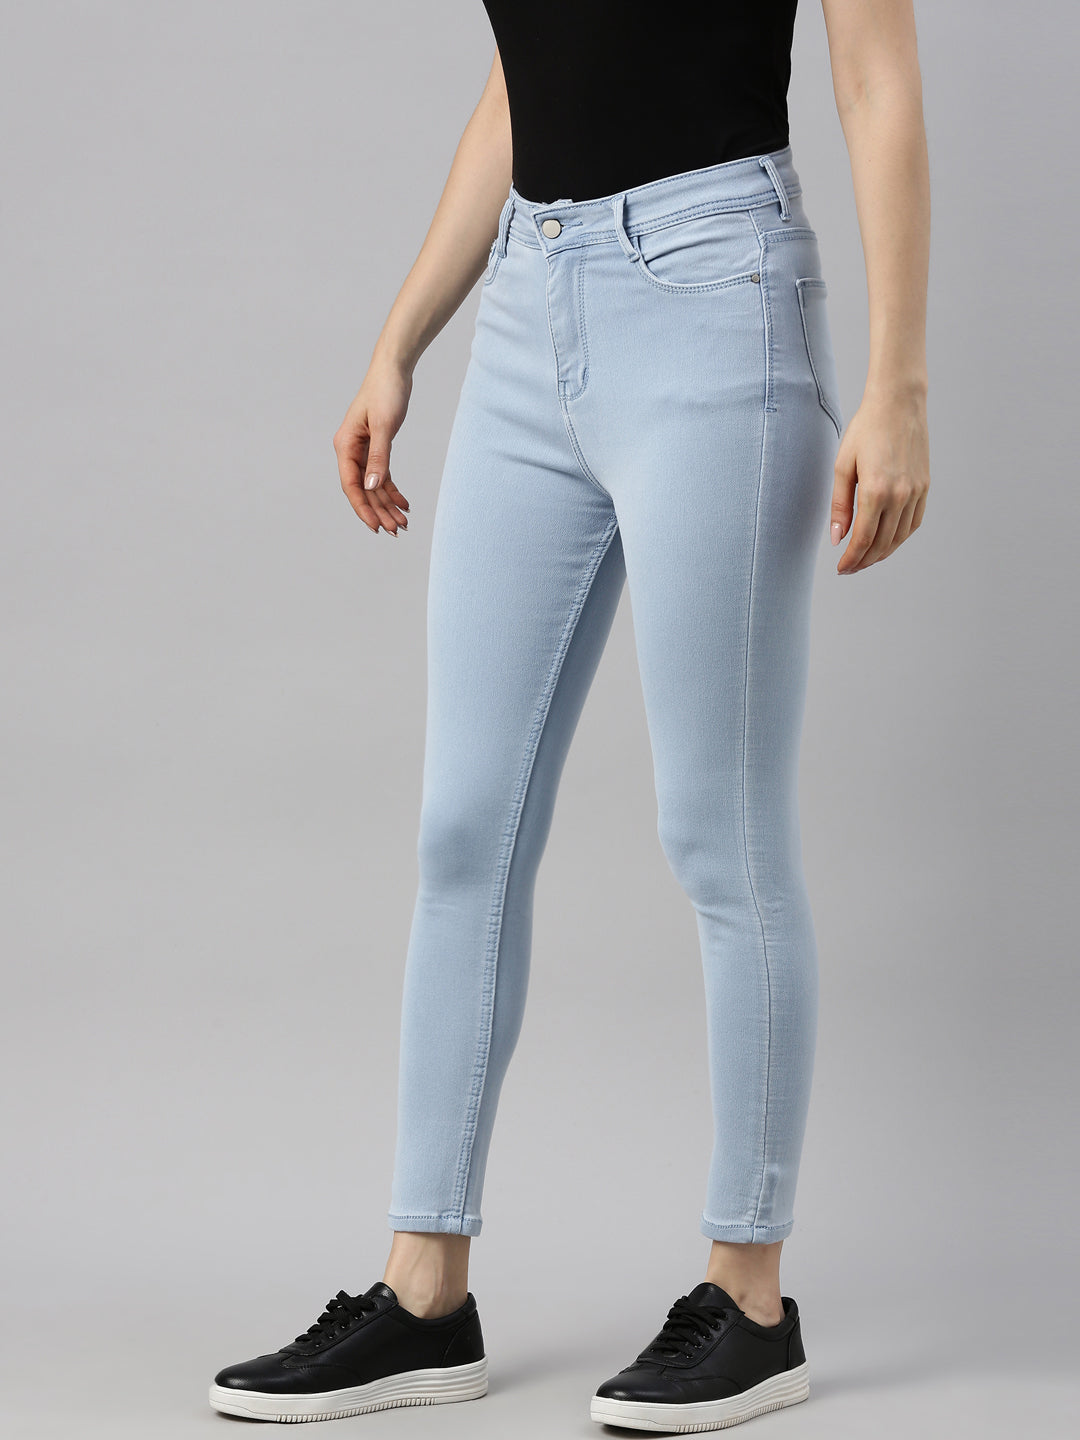 GAP MOM TODDLER GIRL - Slim fit jeans - blue denim - Zalando.de